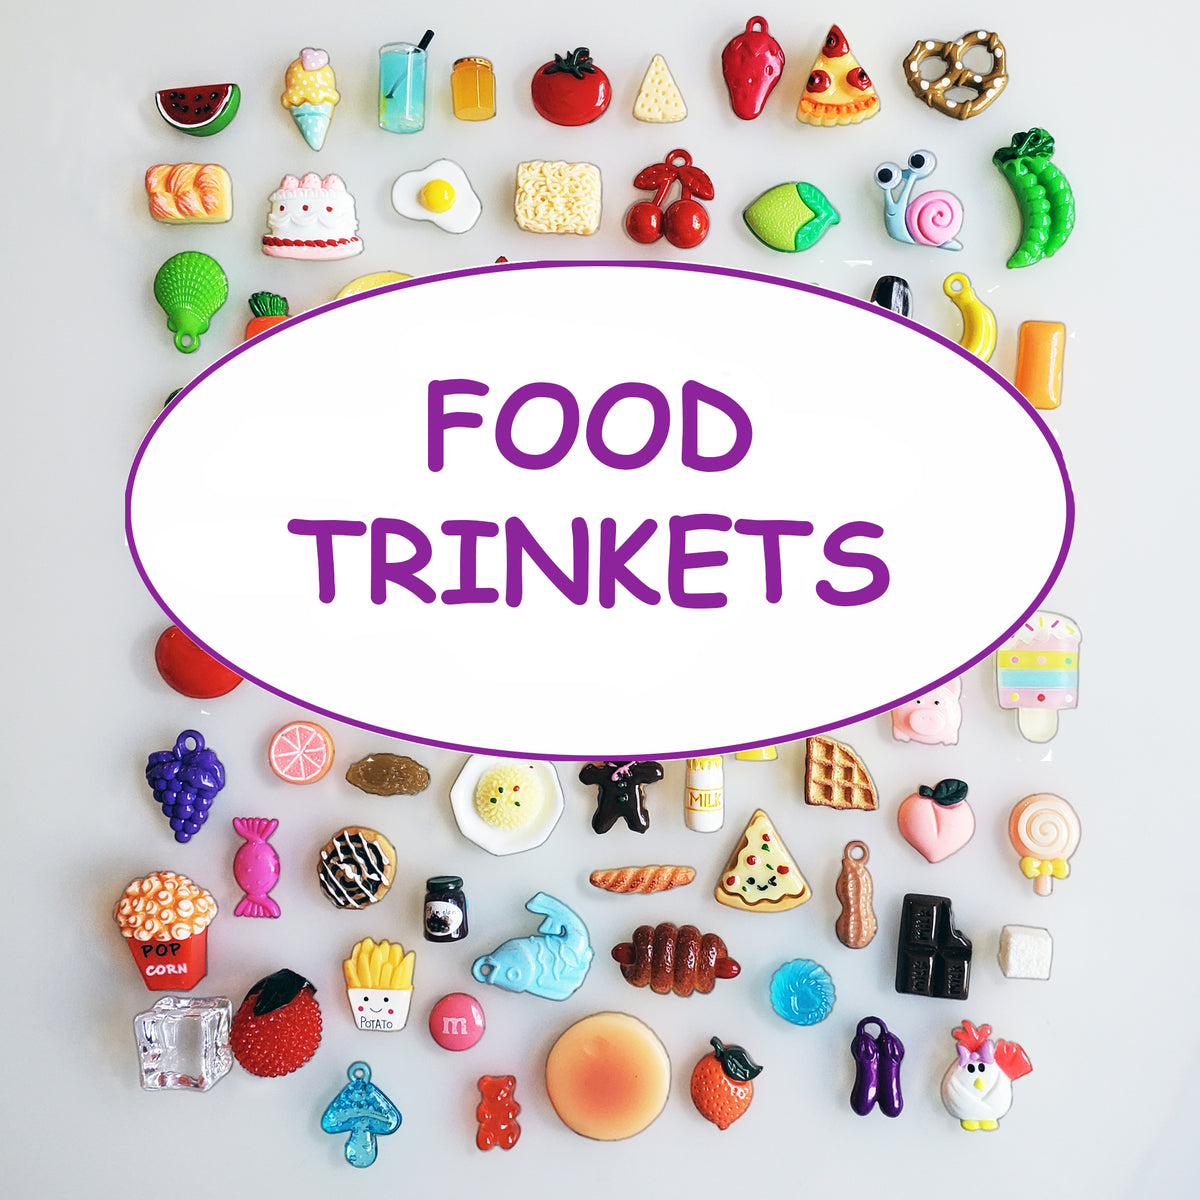 FOOD TRINKETS, 25 to 50 food items, miniature food, food toys